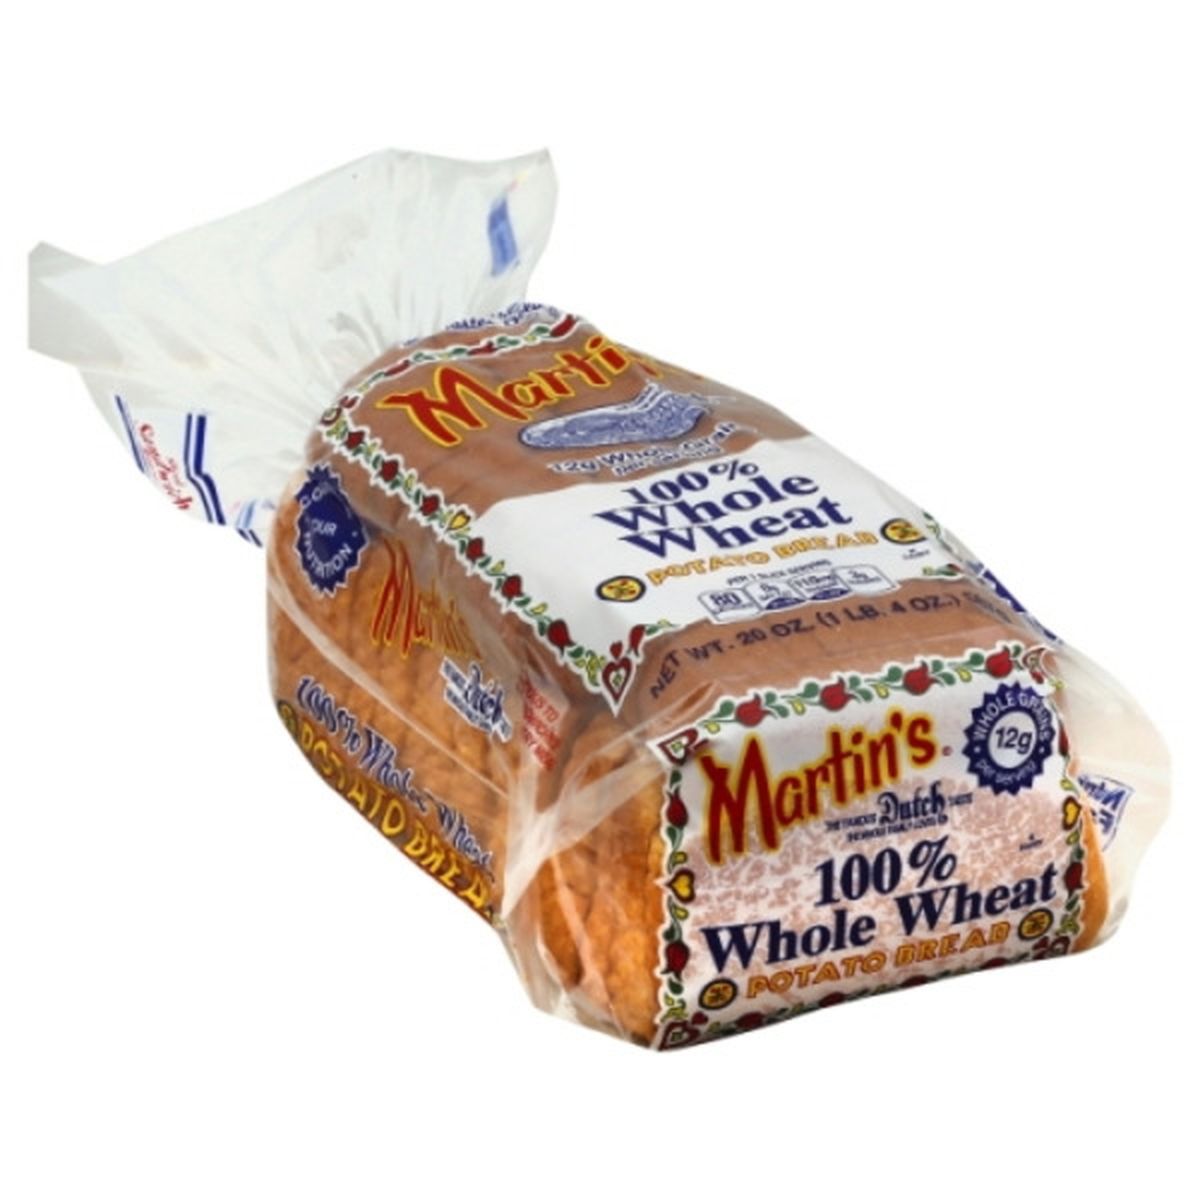 Calories in Martin's Potato Bread, 100% Whole Wheat